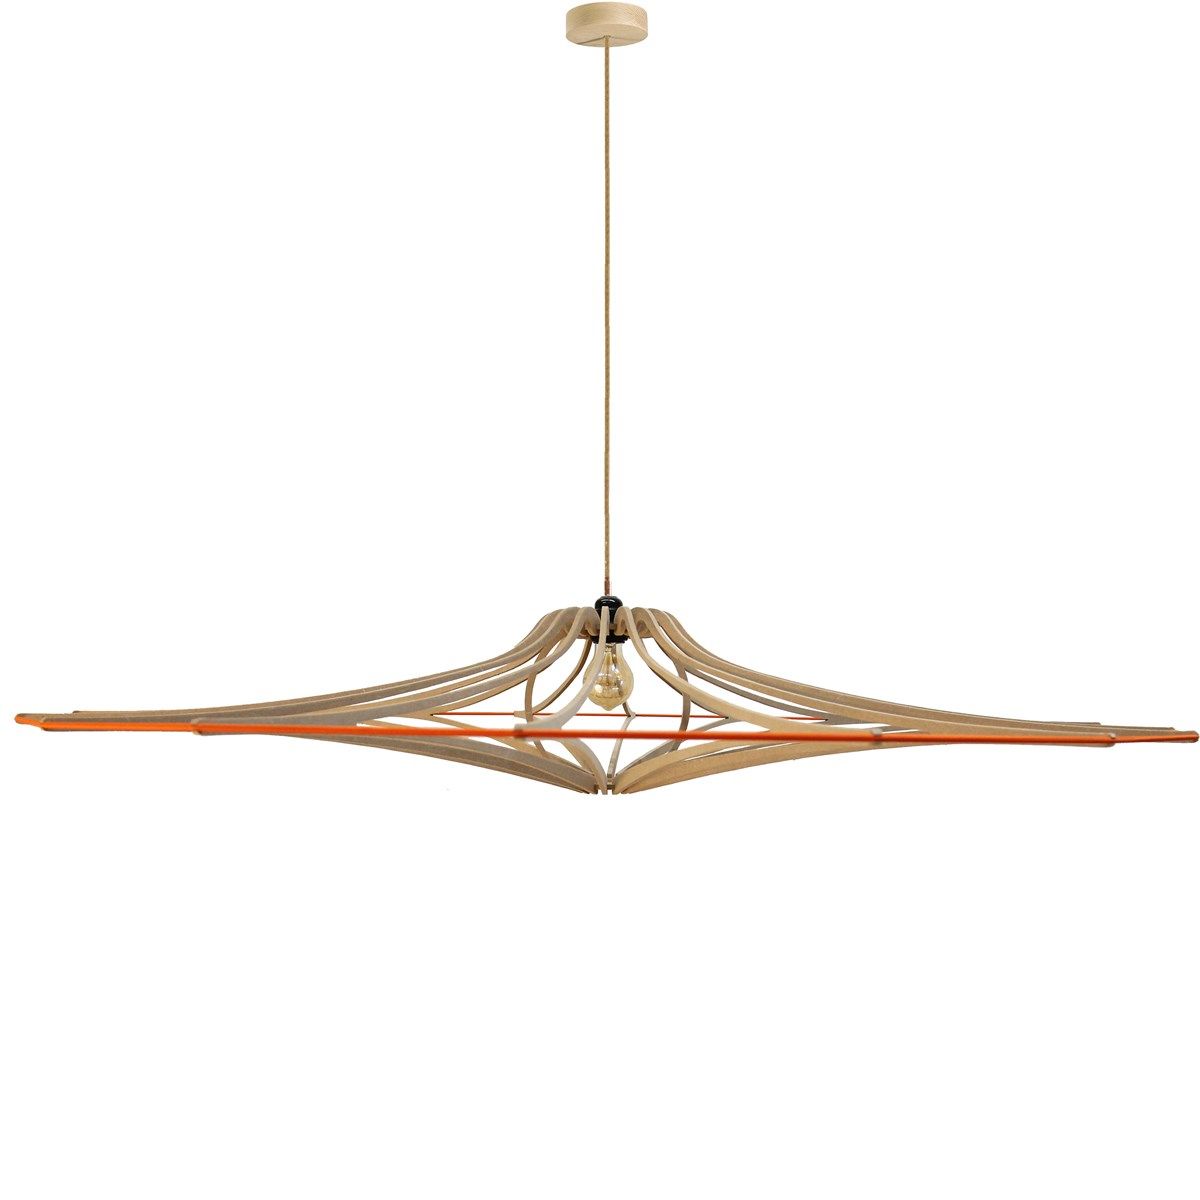 En métal doré rosace Plafond Support Crochet vintage industriel style câble de tissu